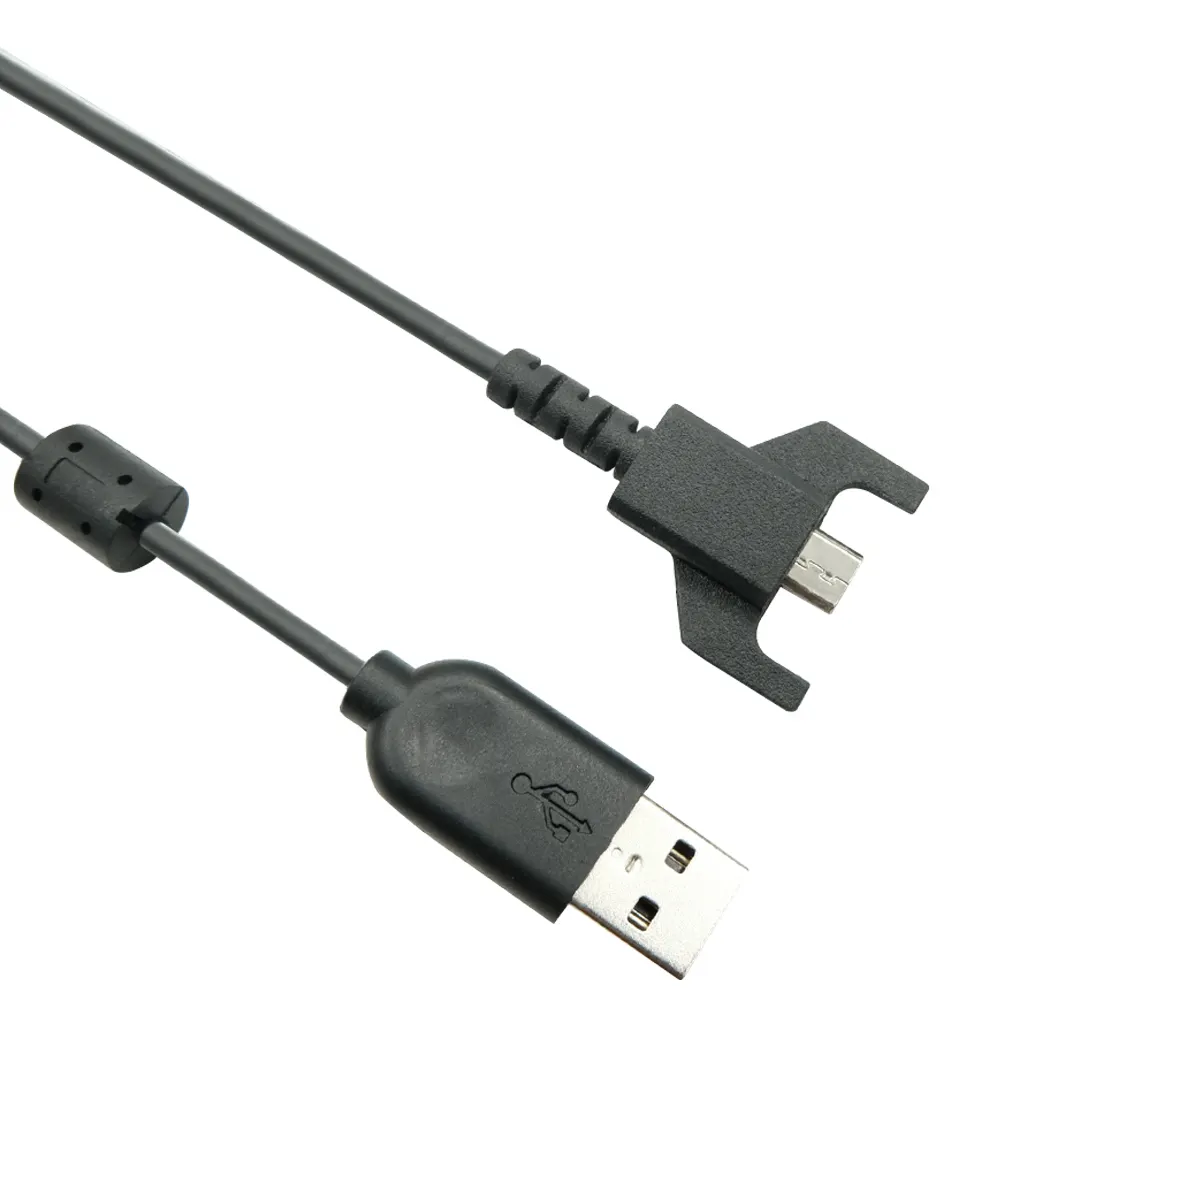 Logitech Original-USB-Ladekabel für G703 G900 G903 G Pro kabellose G Pro X superleichte Gaming-Maus, USB zu Micro-USB (Schwarz)